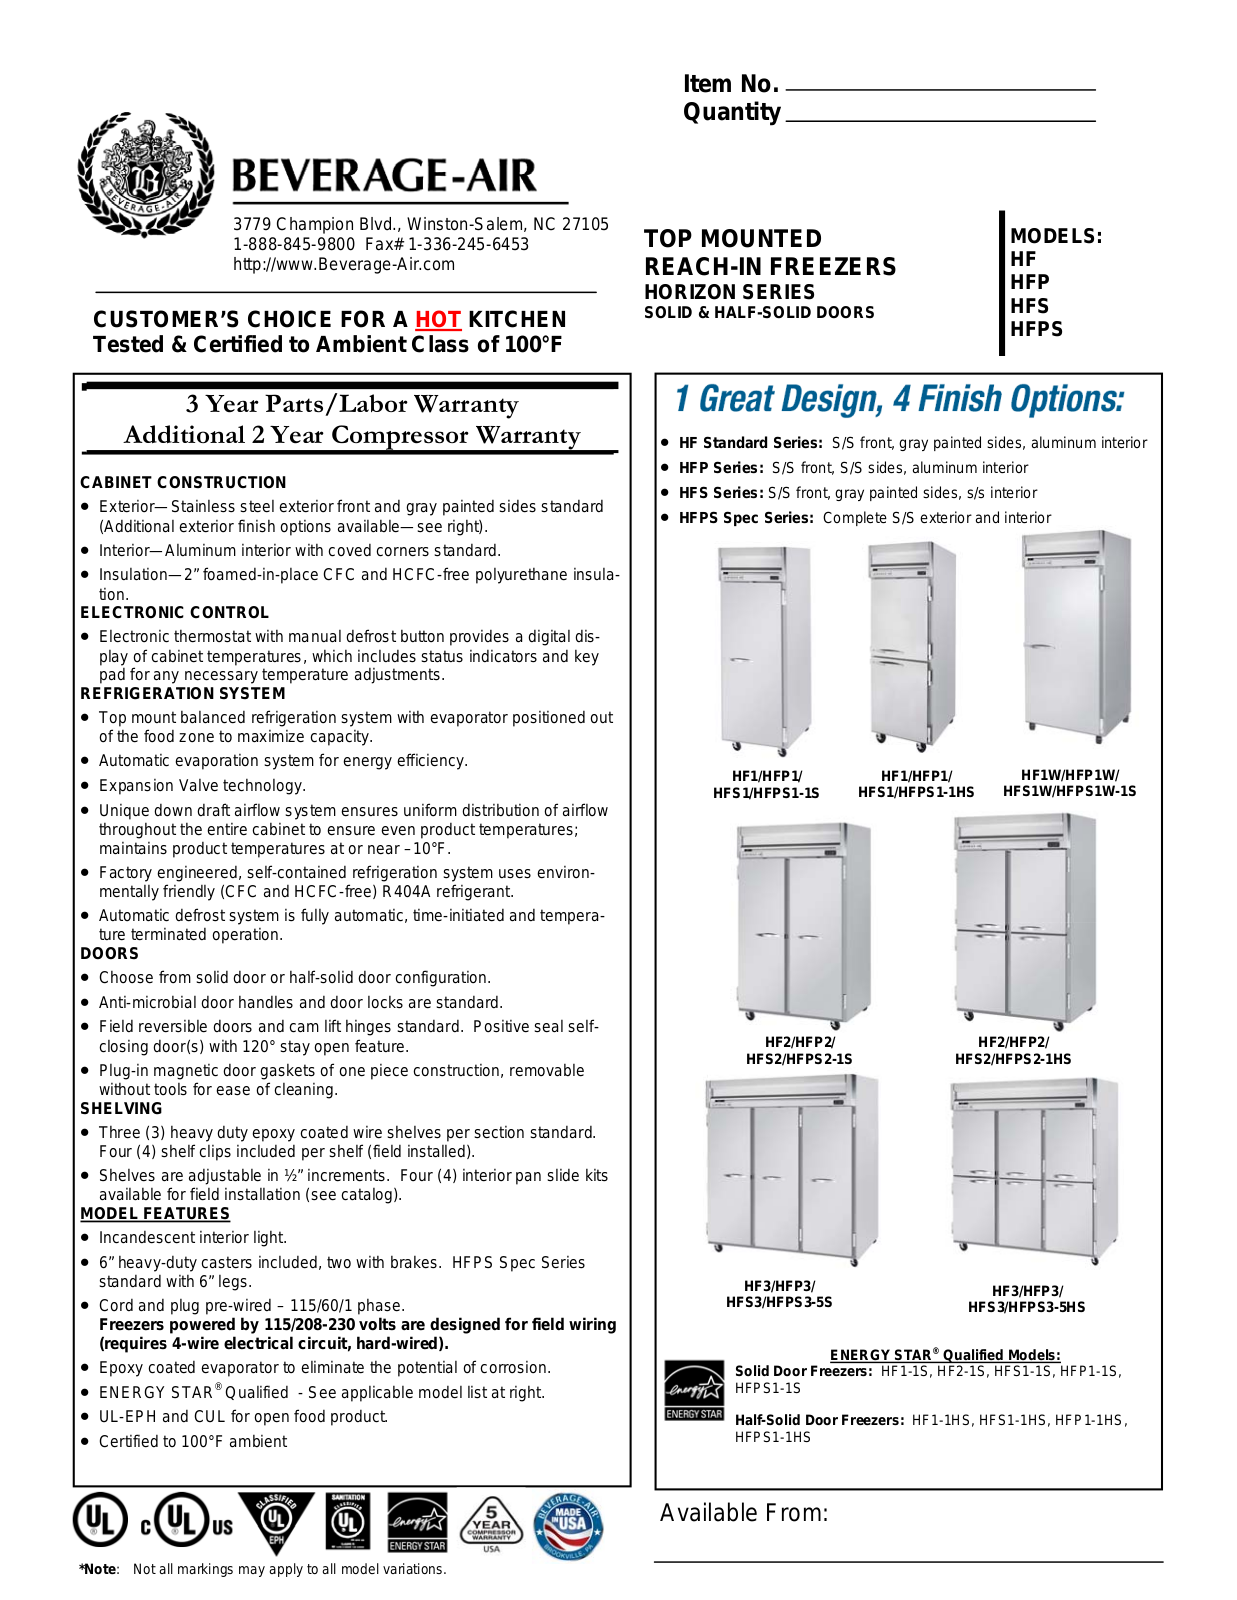 Beverage Air HF1-1HS User Manual